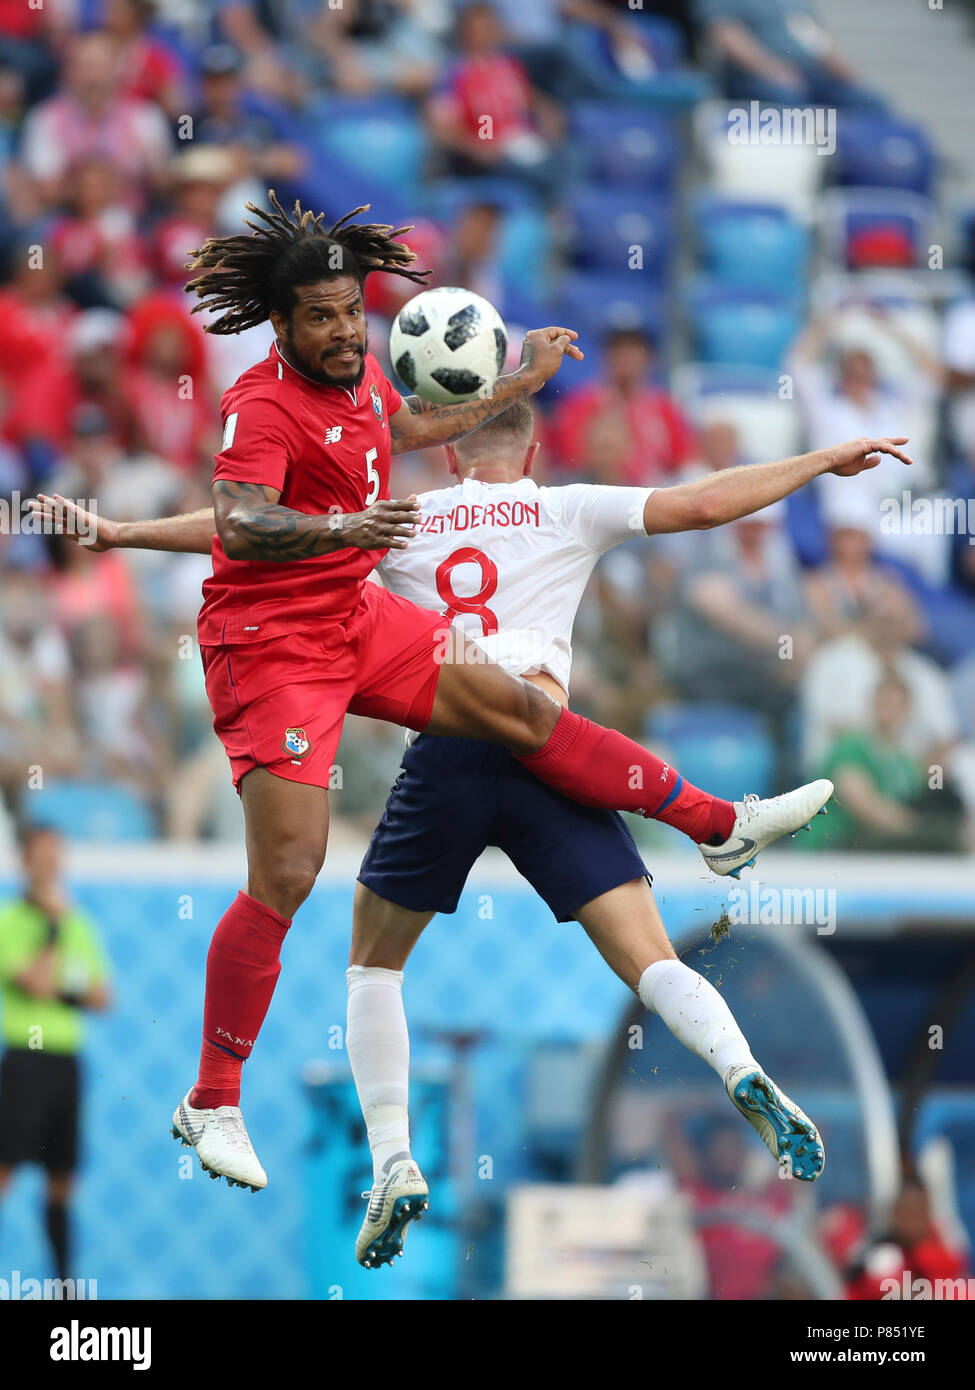 Eric Davis do Panama disputa bola com jogador da Inglaterra realizada neste  domingo, 24, no Estádio Nizhny Novgorod, na Rússia, válida pela 2ª rodada  do Grupo G da Copa do Mundo 2018